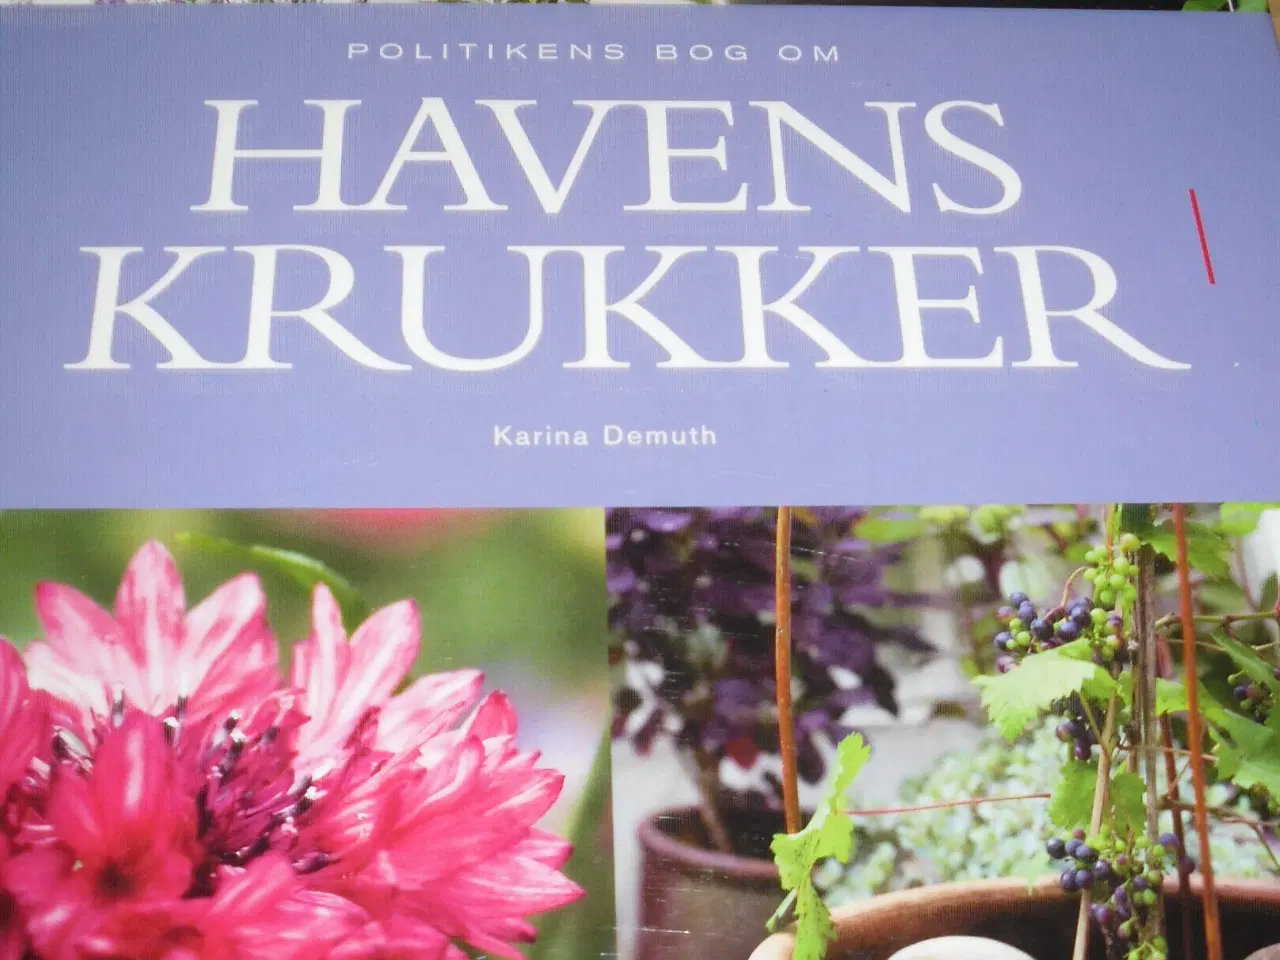 Billede 1 - Politikens bog om HAVENS KRUKKER.